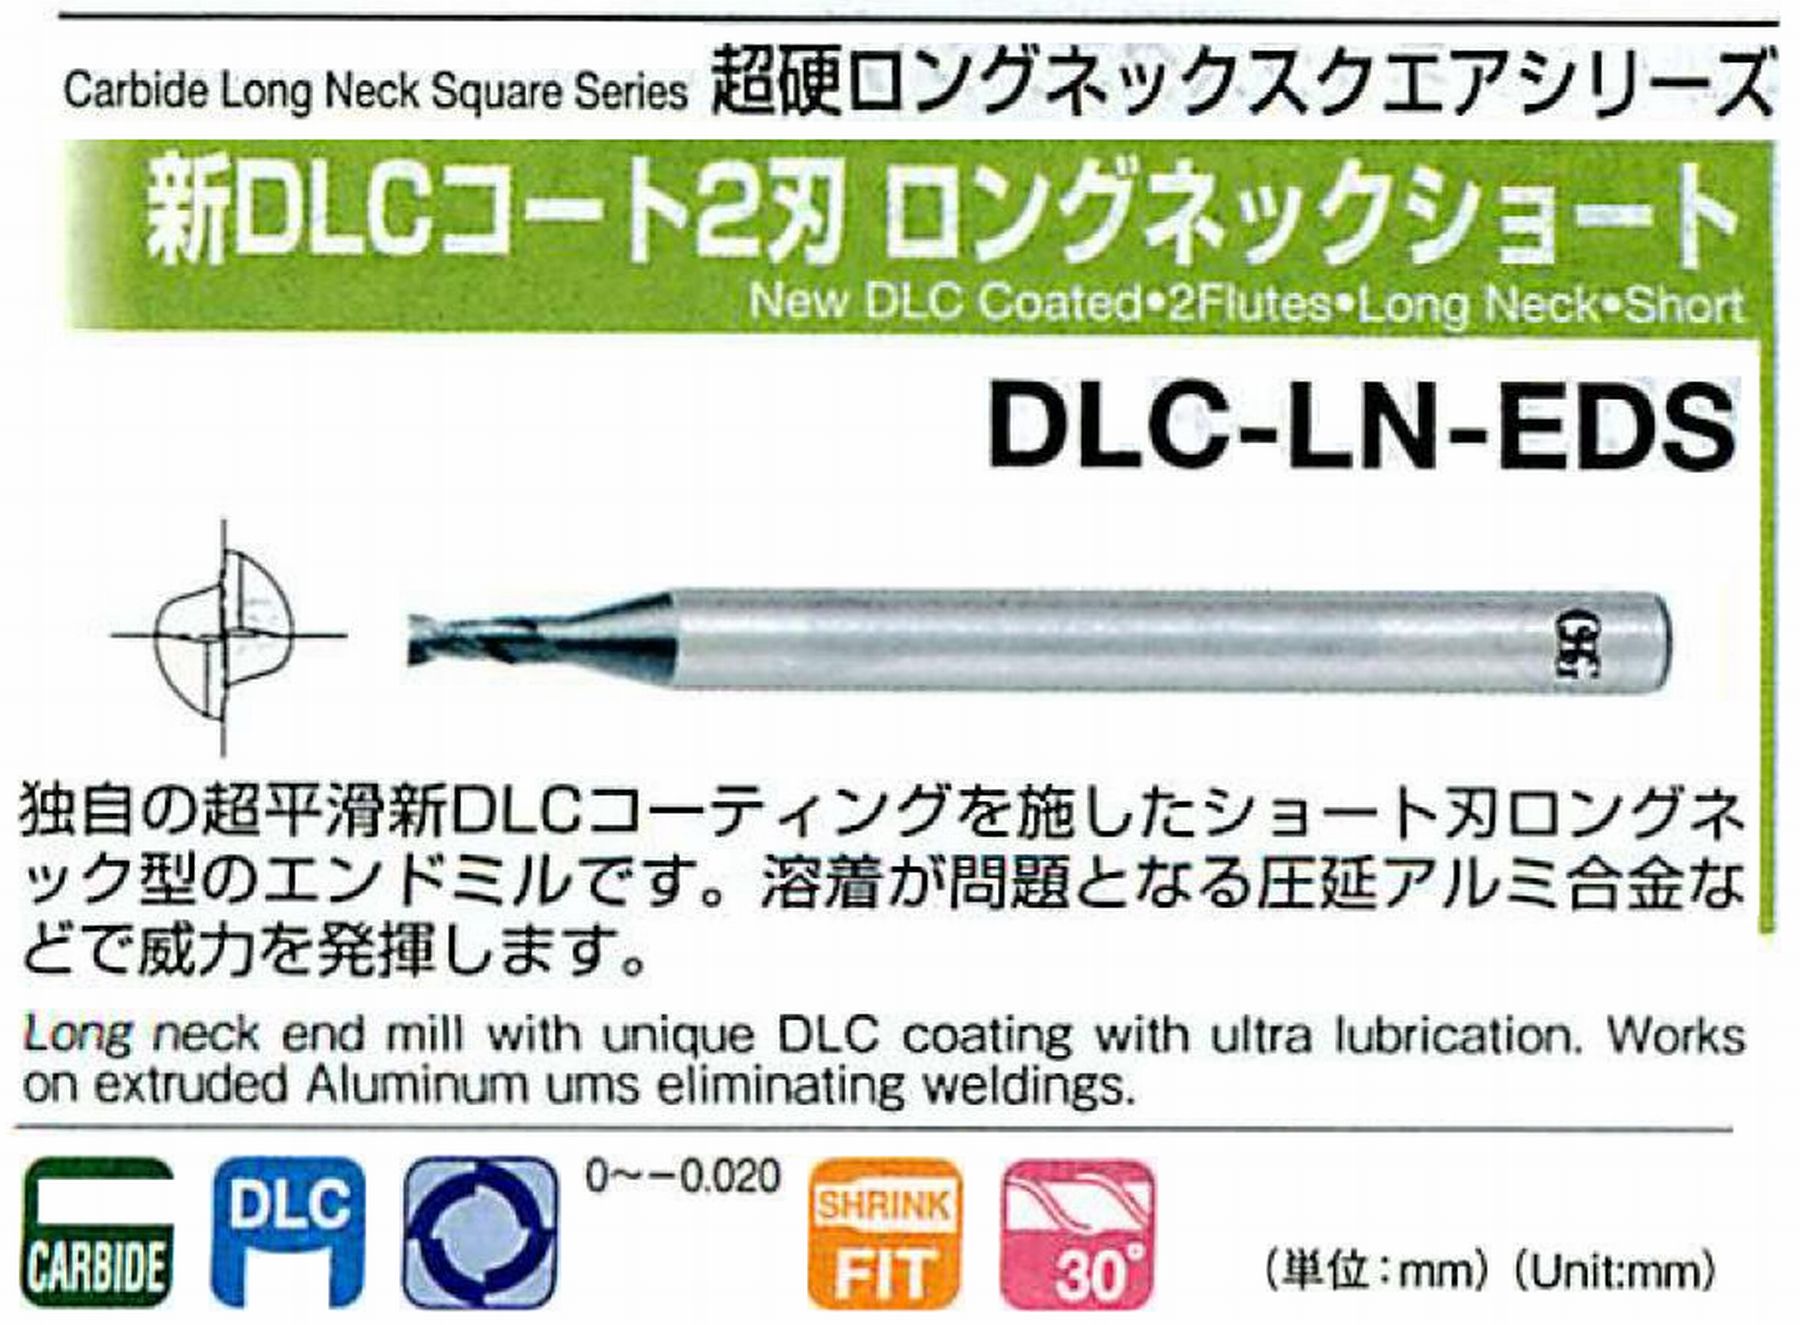 オーエスジー/OSG 新DLCコート2刃 ロングネックショート DLC-LN-EDS 外径×首下長6×30 全長90 刃長9 シャンク径6mm 首径5.85